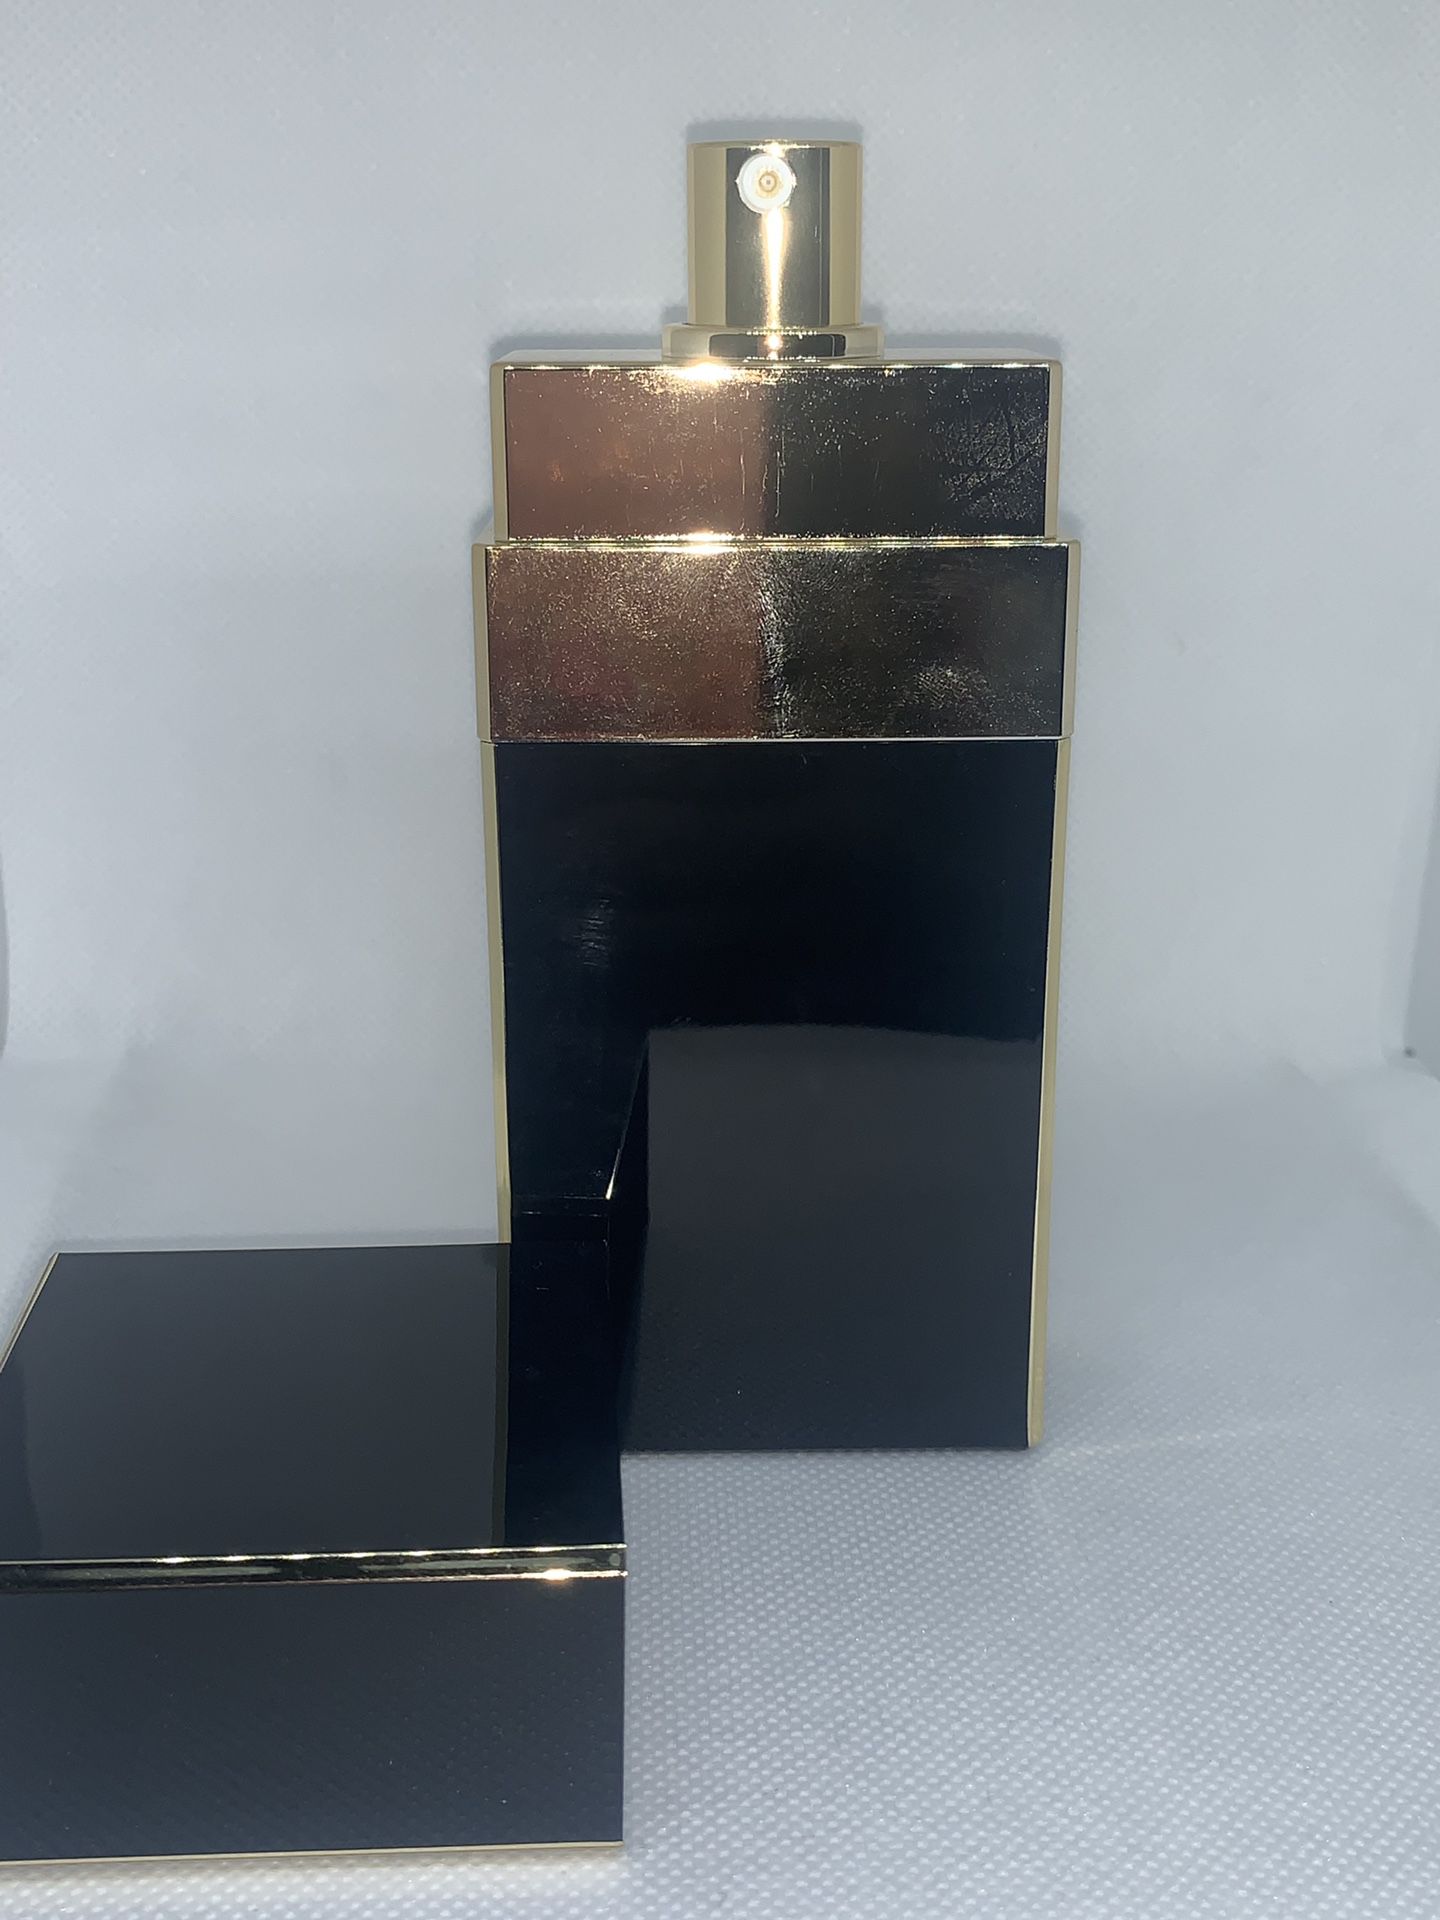 Chanel Coco 60 ml 2 oz Eau de Parfum Perfume With Case EDP